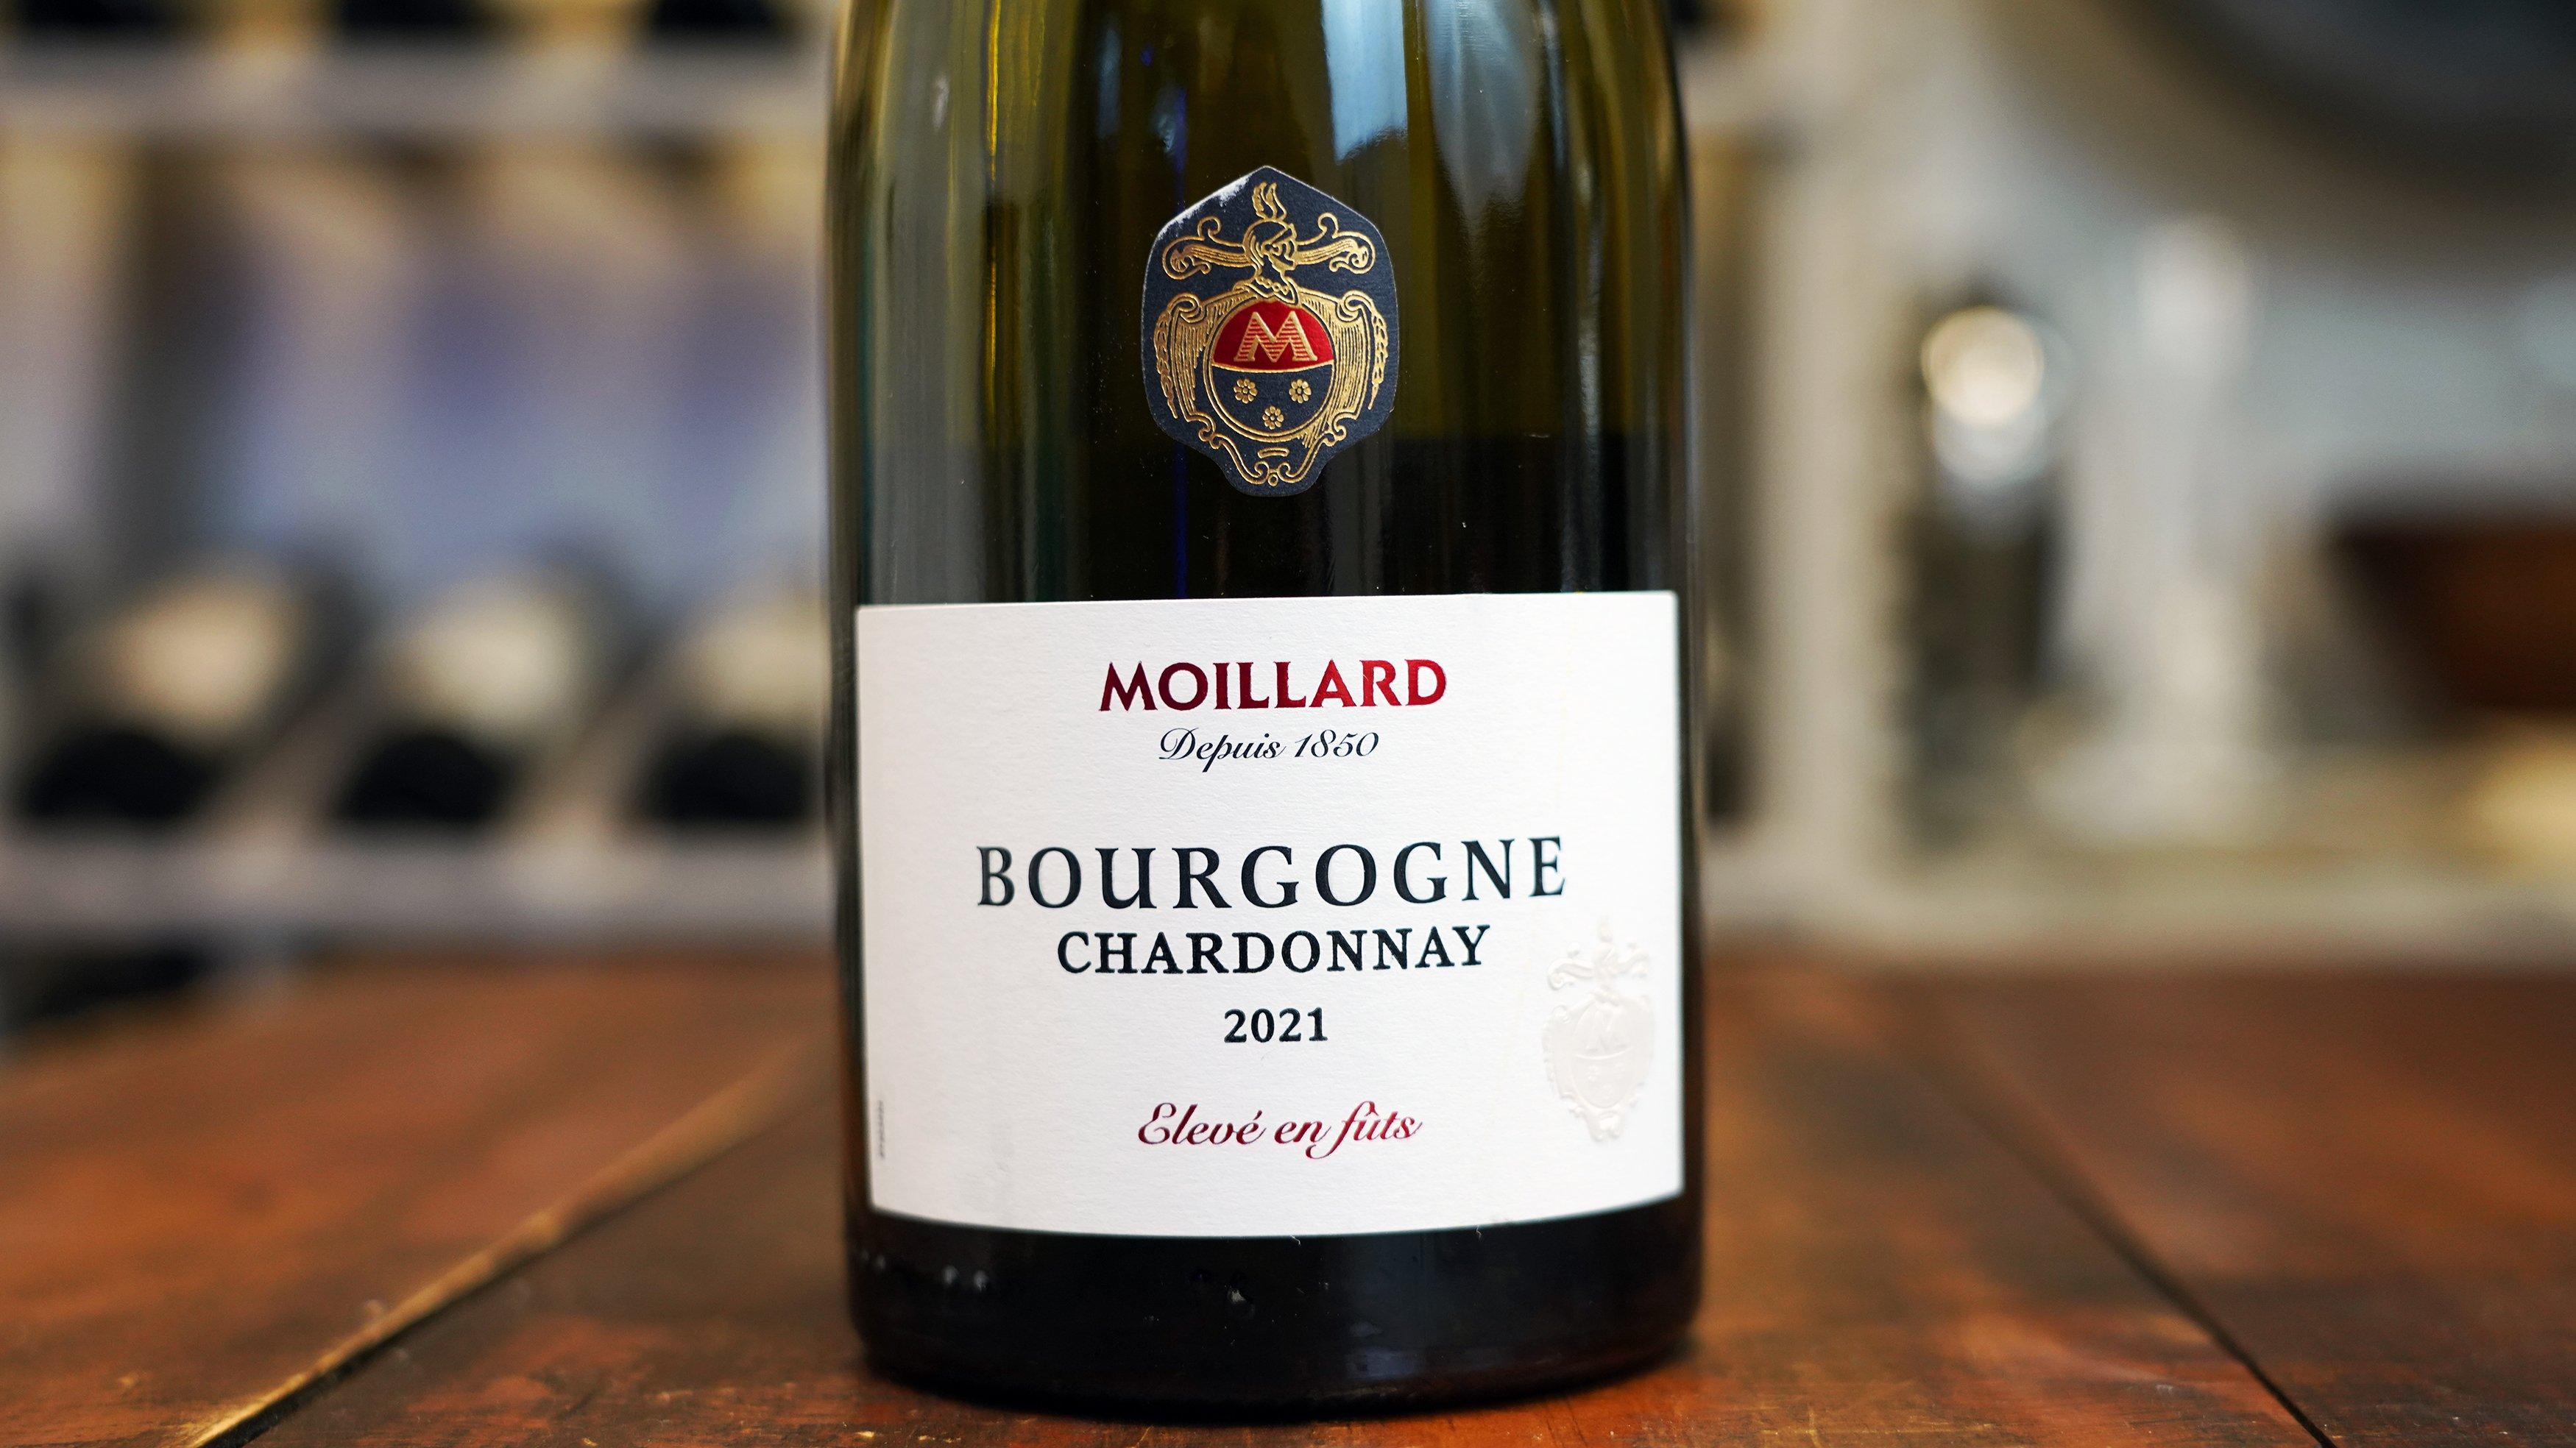 Moillard 2021 Bourgogne Chardonnay Eleve en Futs